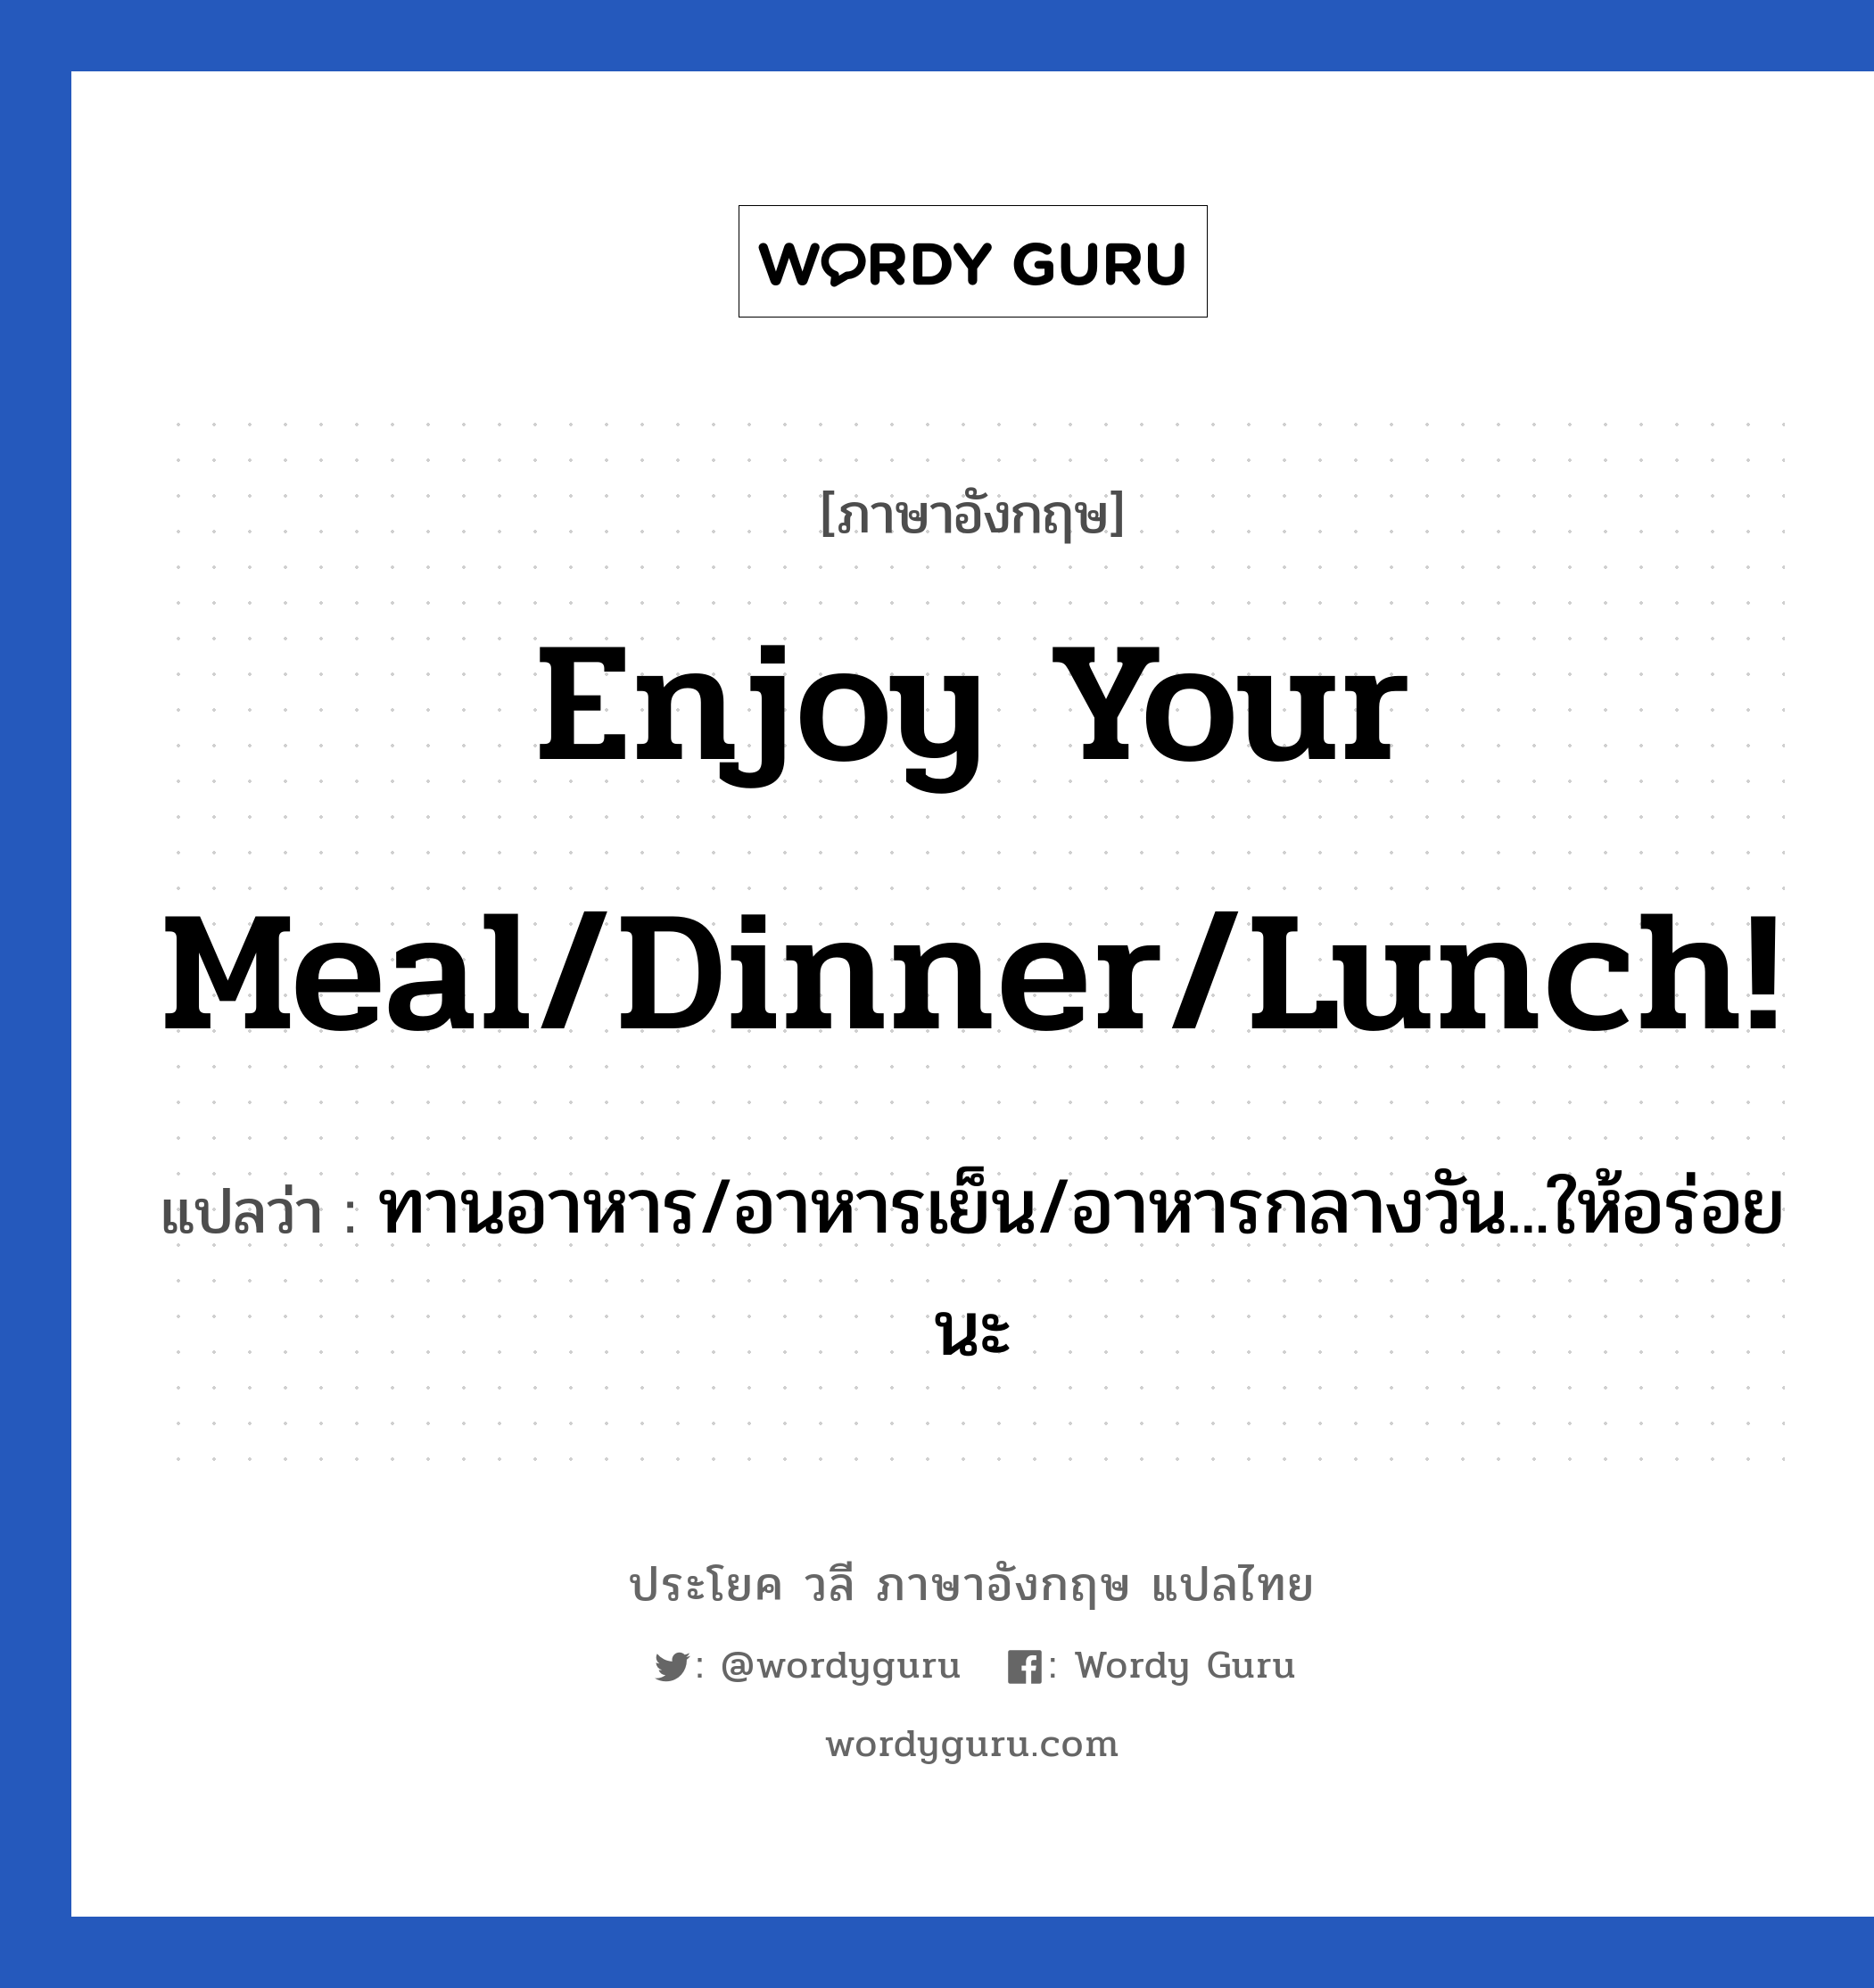 ทานอาหาร/อาหารเย็น/อาหารกลางวัน...ให้อร่อยนะ ภาษาอังกฤษ?, วลีภาษาอังกฤษ ทานอาหาร/อาหารเย็น/อาหารกลางวัน...ให้อร่อยนะ แปลว่า Enjoy your meal/dinner/lunch! หมวด วลีทั่วไป